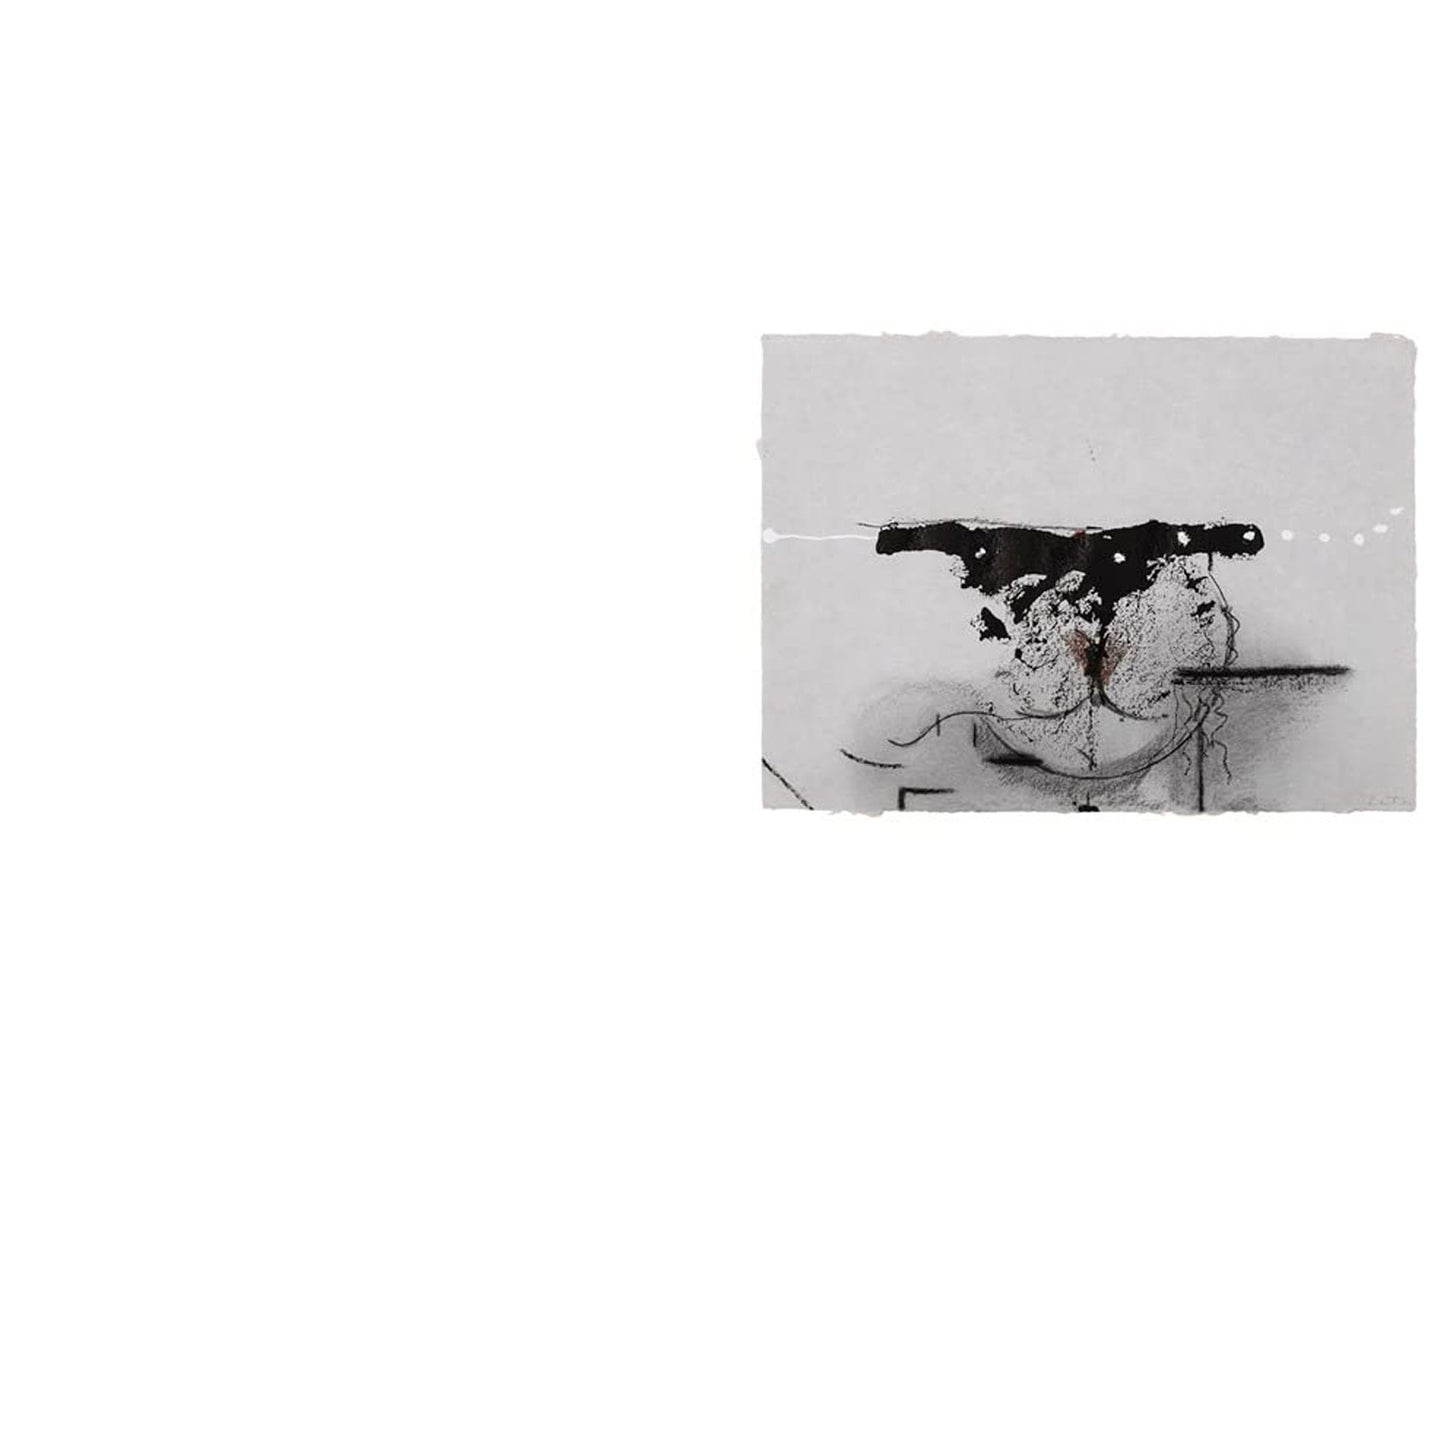 Helen Frankenthaler: Late Works, 1988 - 2009